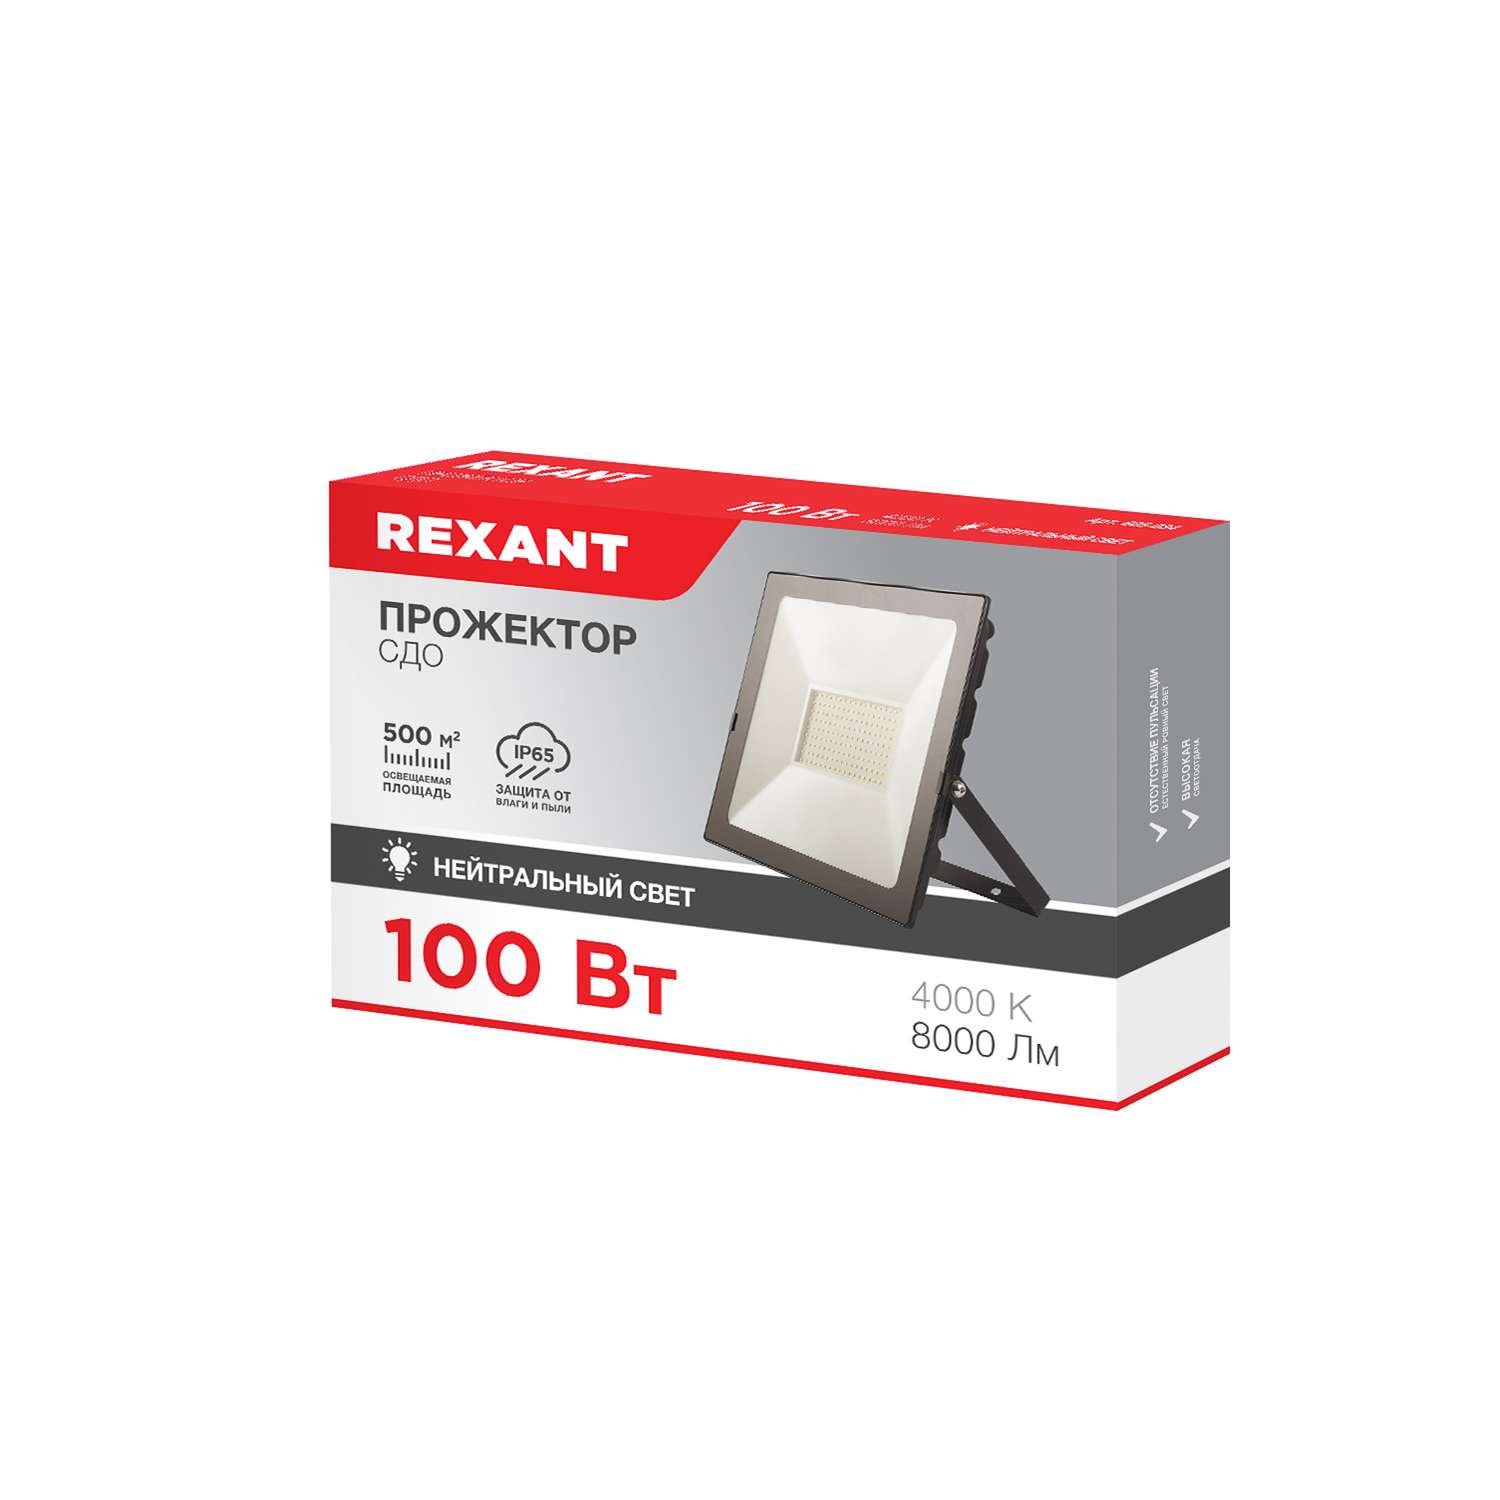 Прожектор REXANT 100 Вт светодиодный 8000Лм 4000K нейтральный свет черный корпус - фото 5